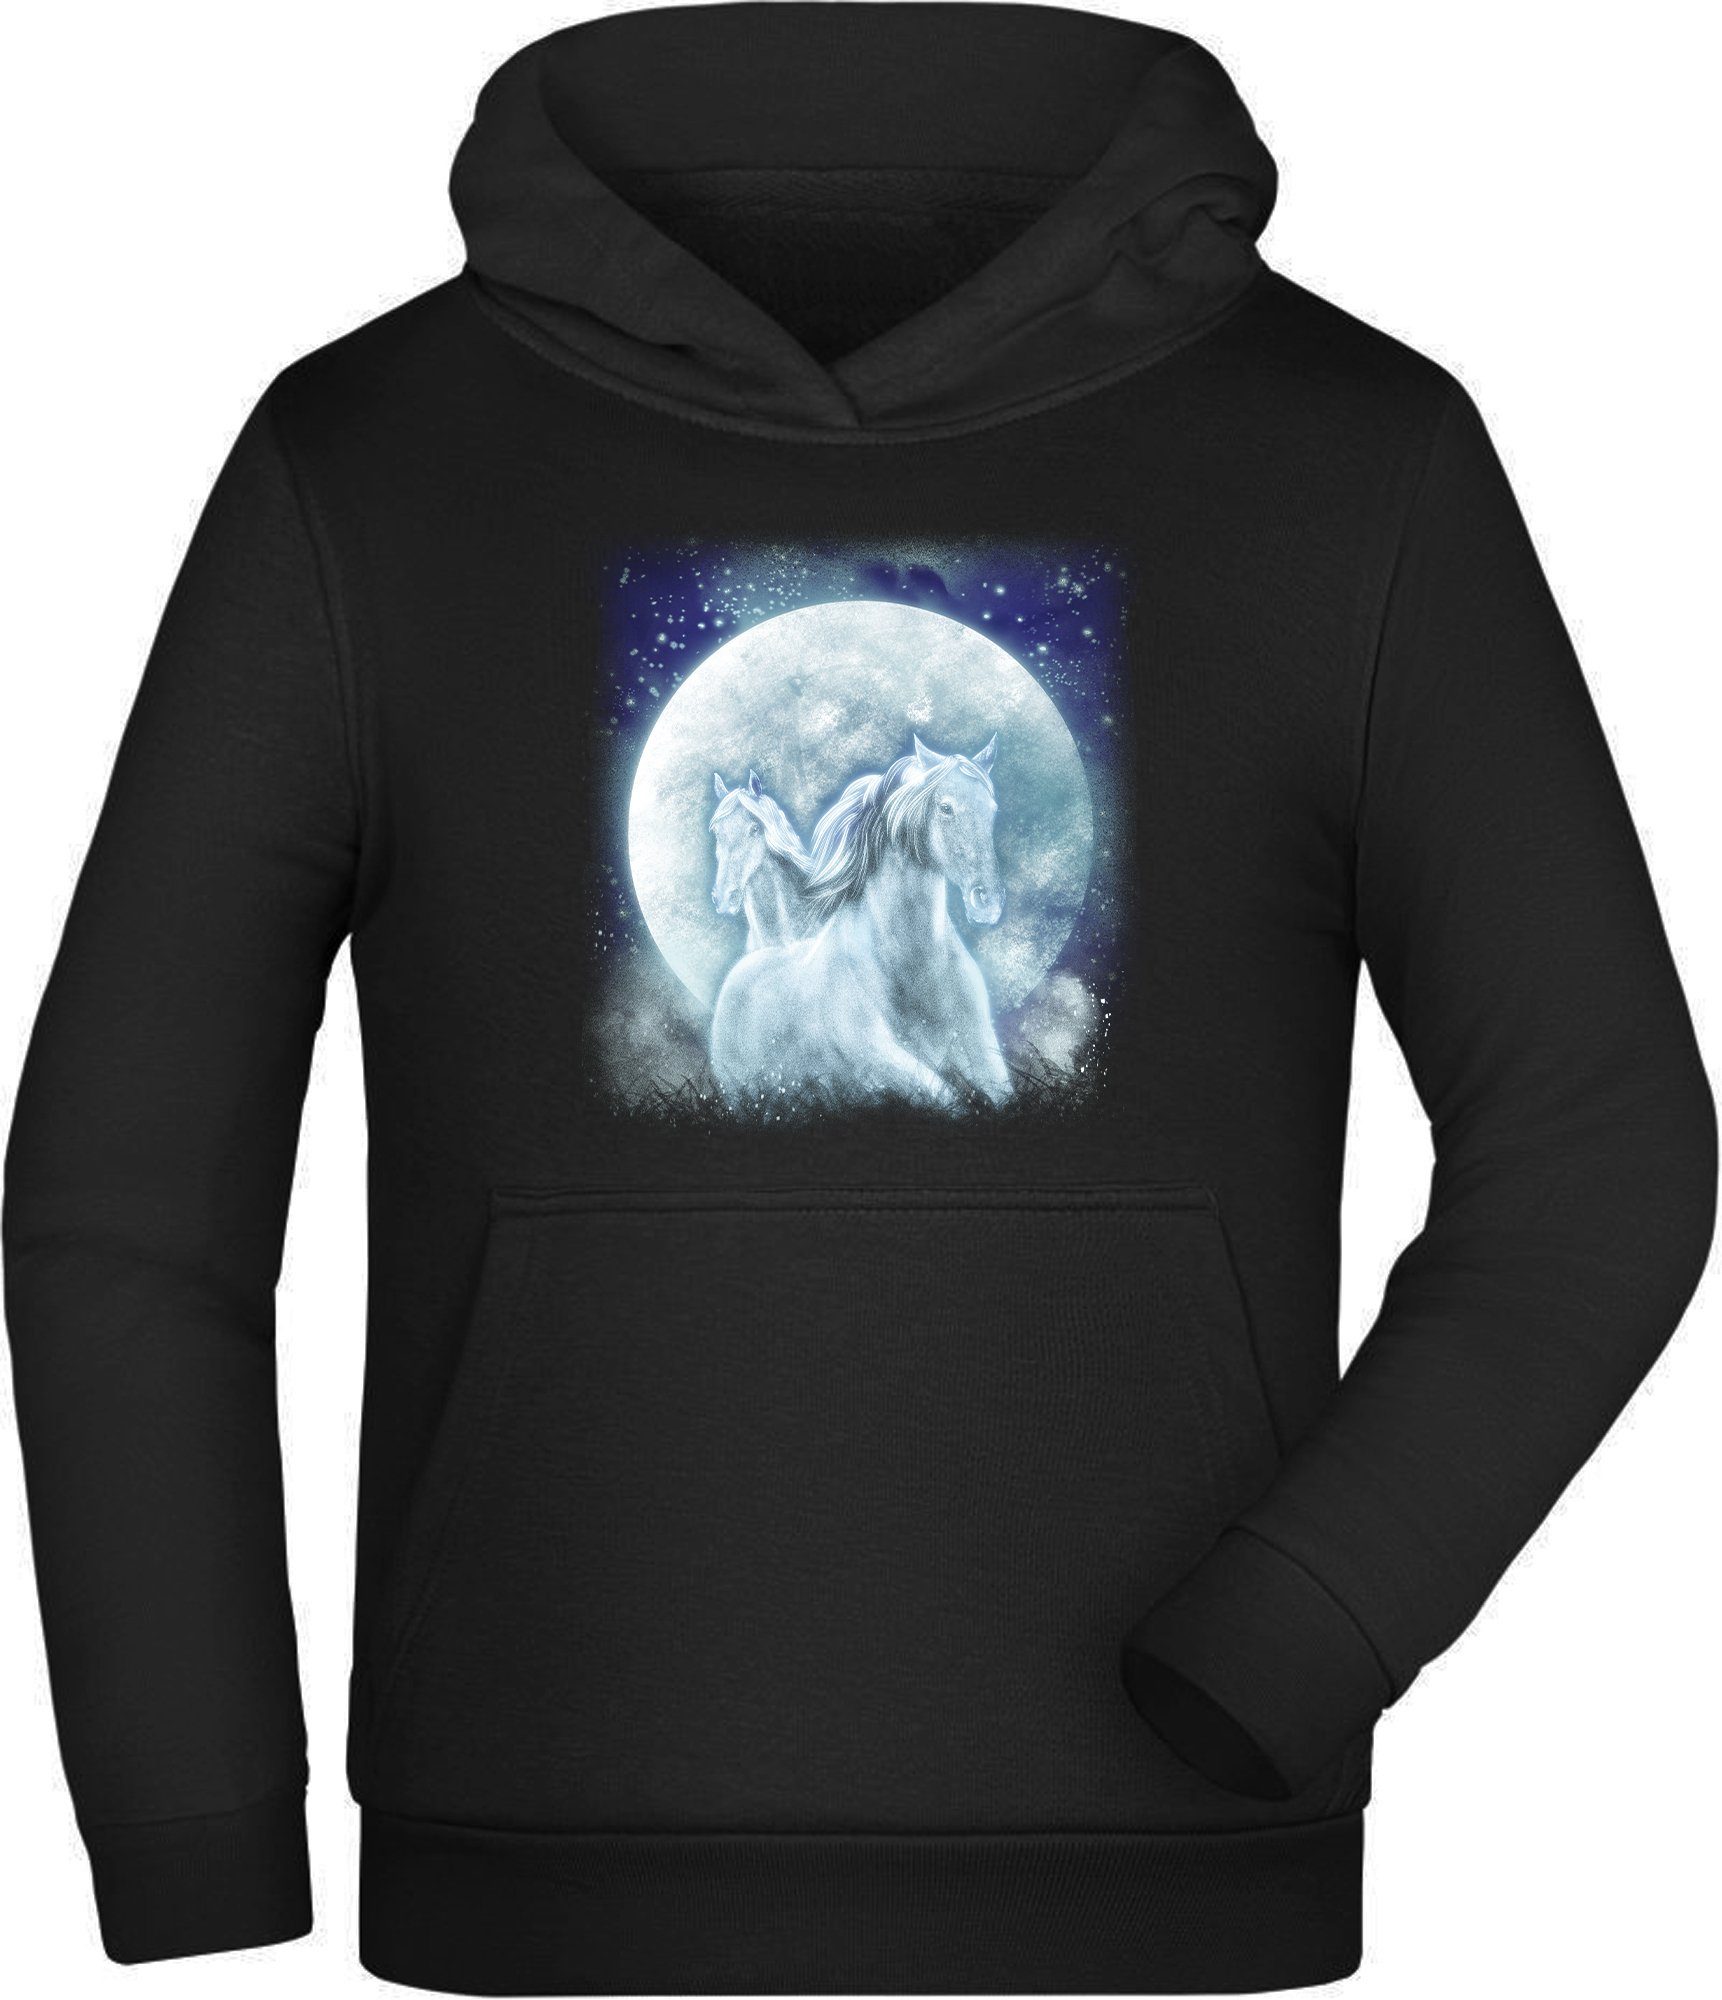 MyDesign24 Hoodie Kinder Kapuzen Sweatshirt - Pferde Hoodie Fantasy vor Mond Kapuzensweater mit Aufdruck, i136